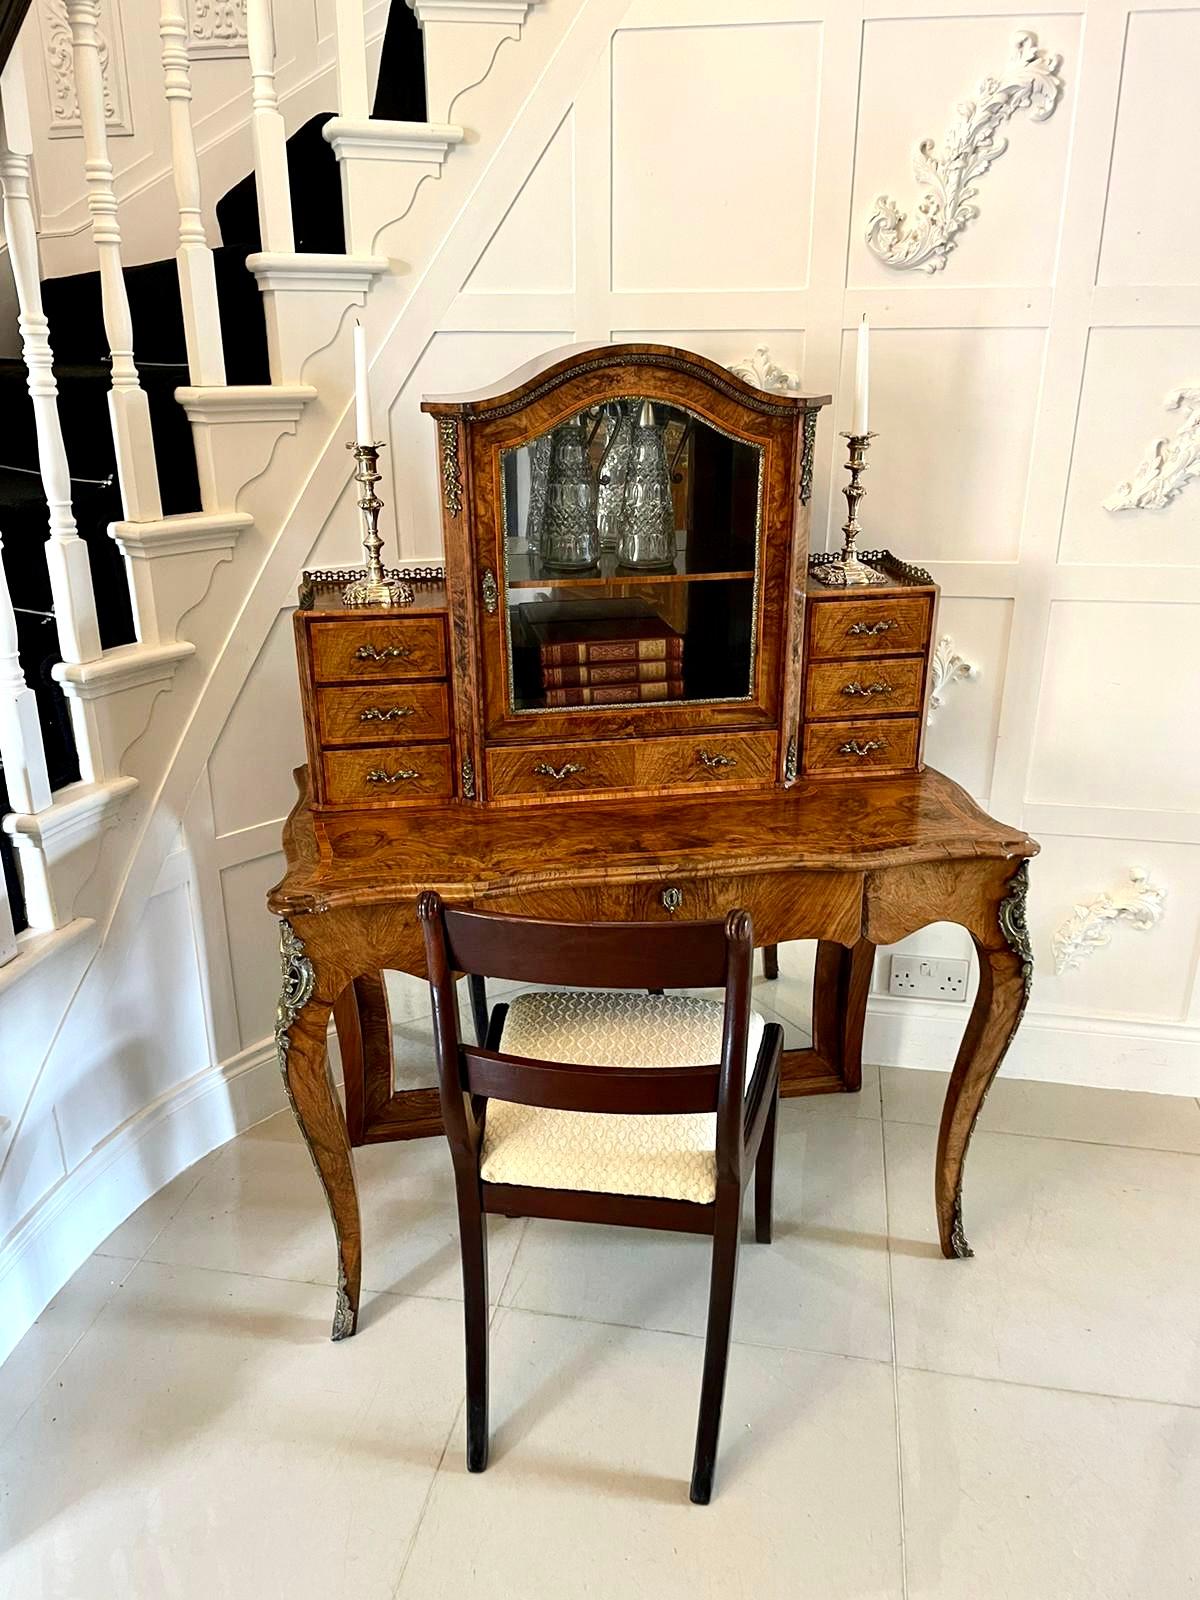 Hervorragende Qualität antiken viktorianischen Wurzelnussbaum Bonheur de Jour Schreibtisch mit einem schön gestalteten und geformten oberen verglasten Schrank in der Mitte, die sich öffnet, um einen eingebauten Spiegel und Regal Innenraum mit